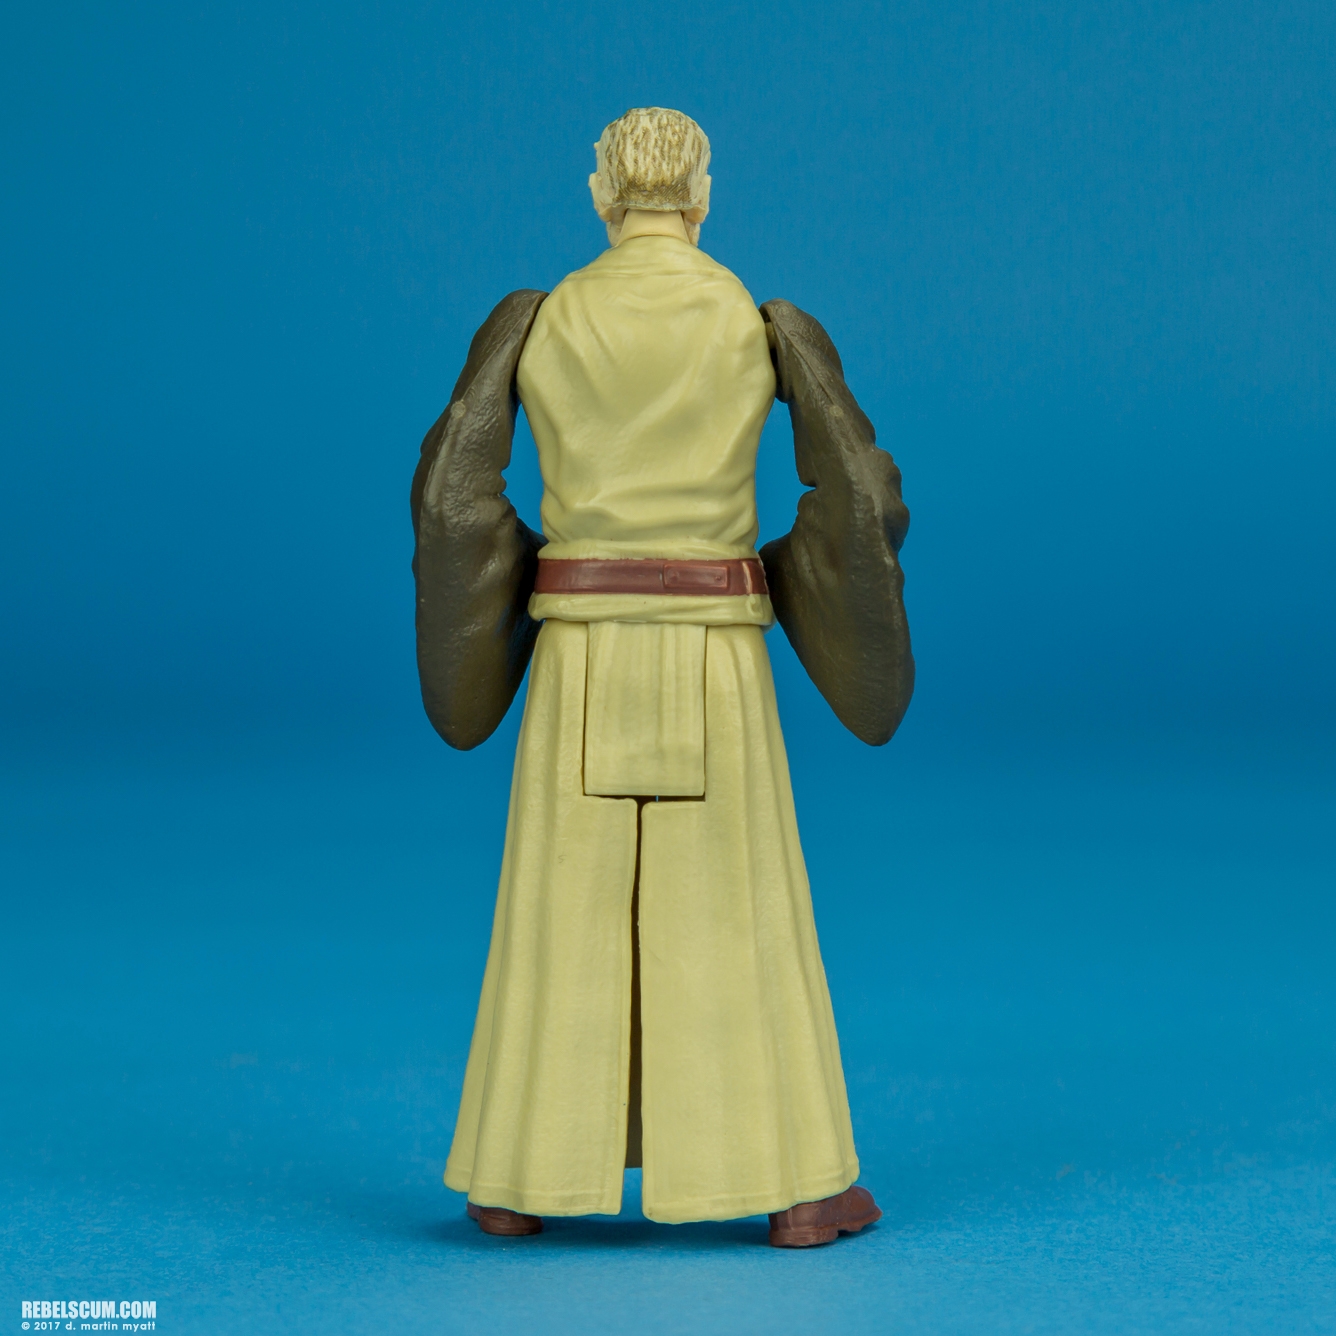 Obi-Wan-Kenobi-Star-Wars-Universe-The-Last-Jedi-008.jpg